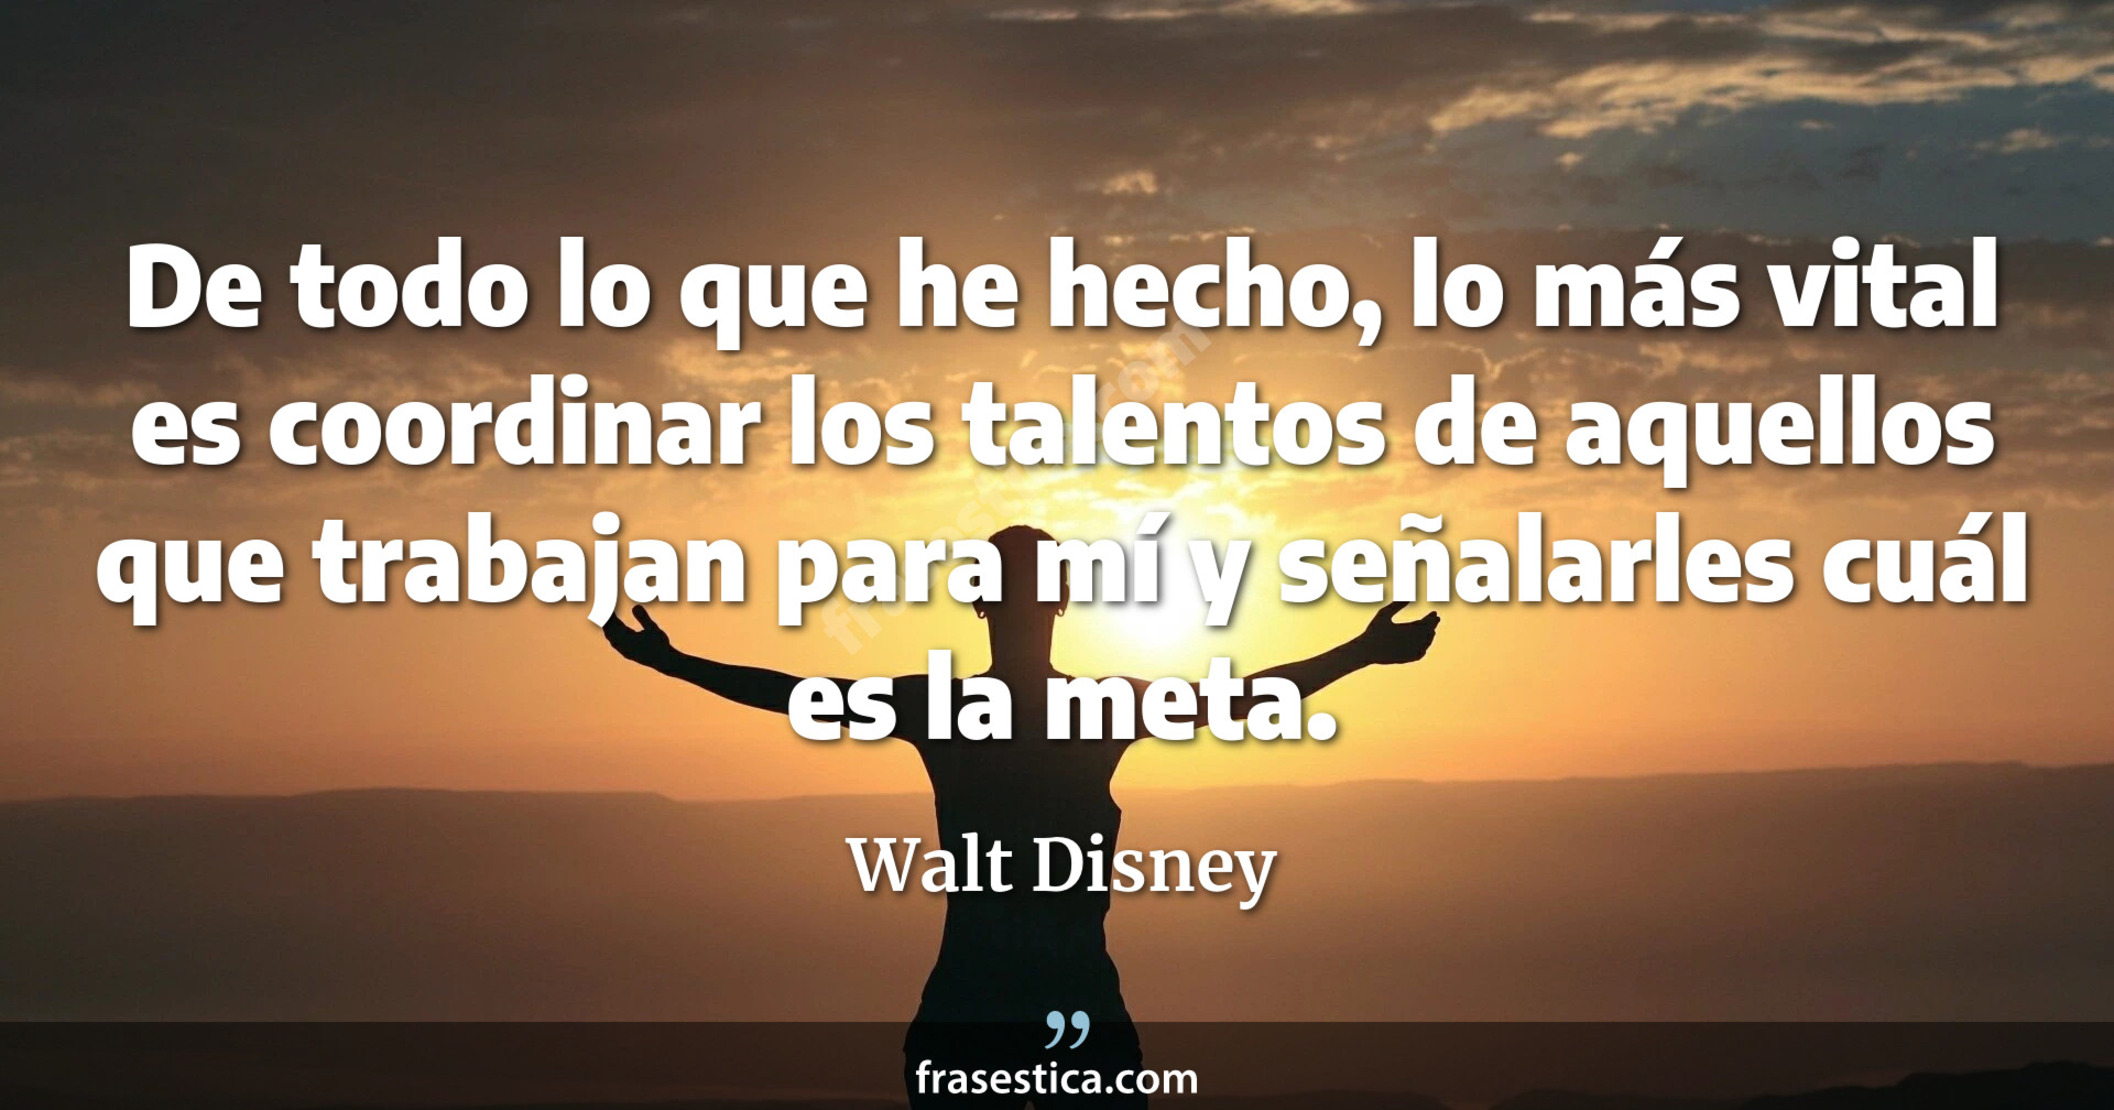 De todo lo que he hecho, lo más vital es coordinar los talentos de aquellos que trabajan para mí y señalarles cuál es la meta. - Walt Disney